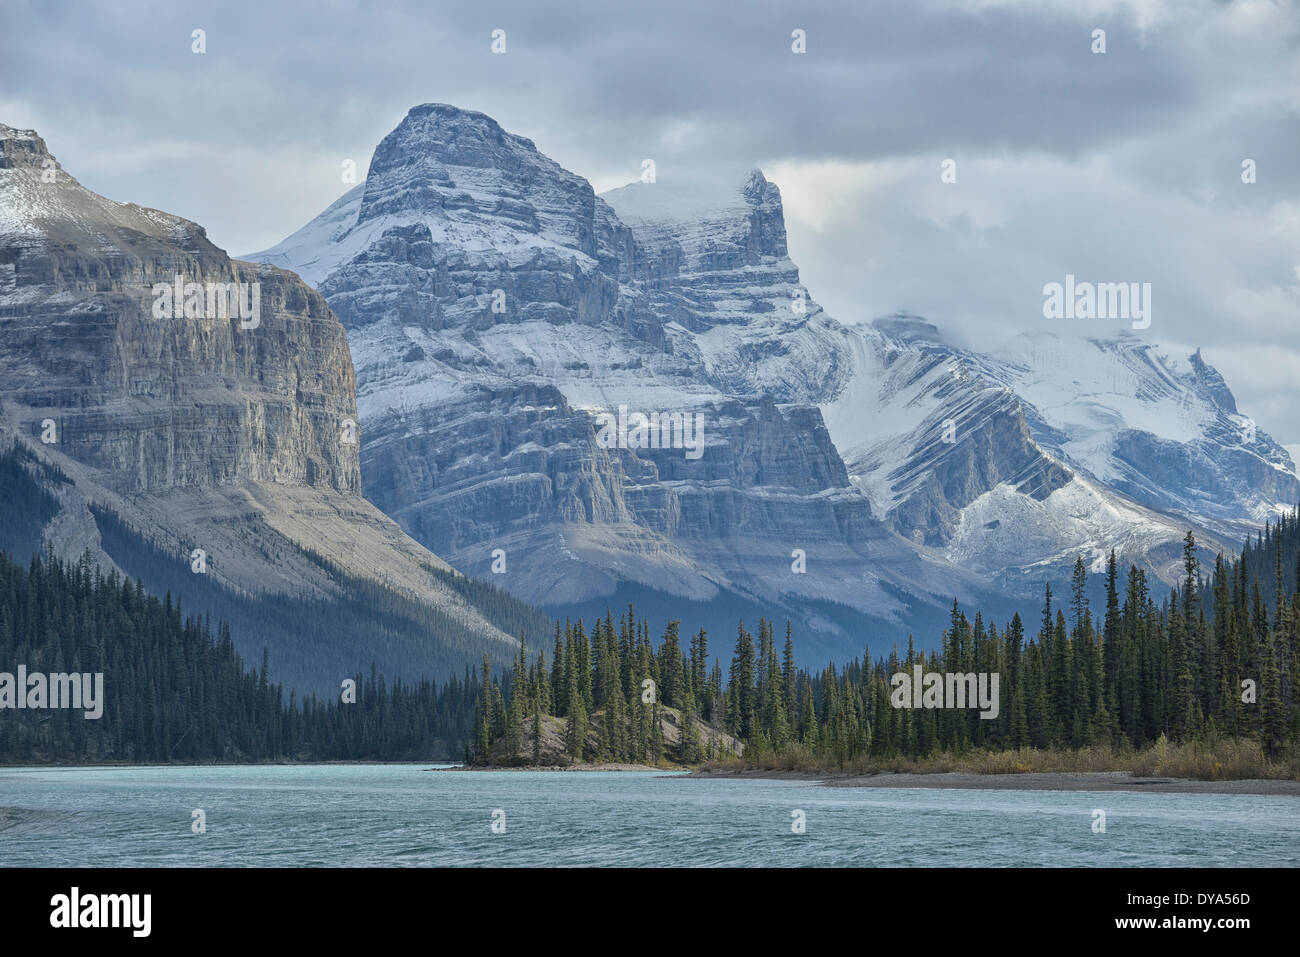 Amérique du Nord, le Canada, l'Alberta, les Rocheuses, les Rocheuses, montagnes Rocheuses, Maligne, lac, paysage, Patrimoine Mondial de l'UNESCO, Banque D'Images